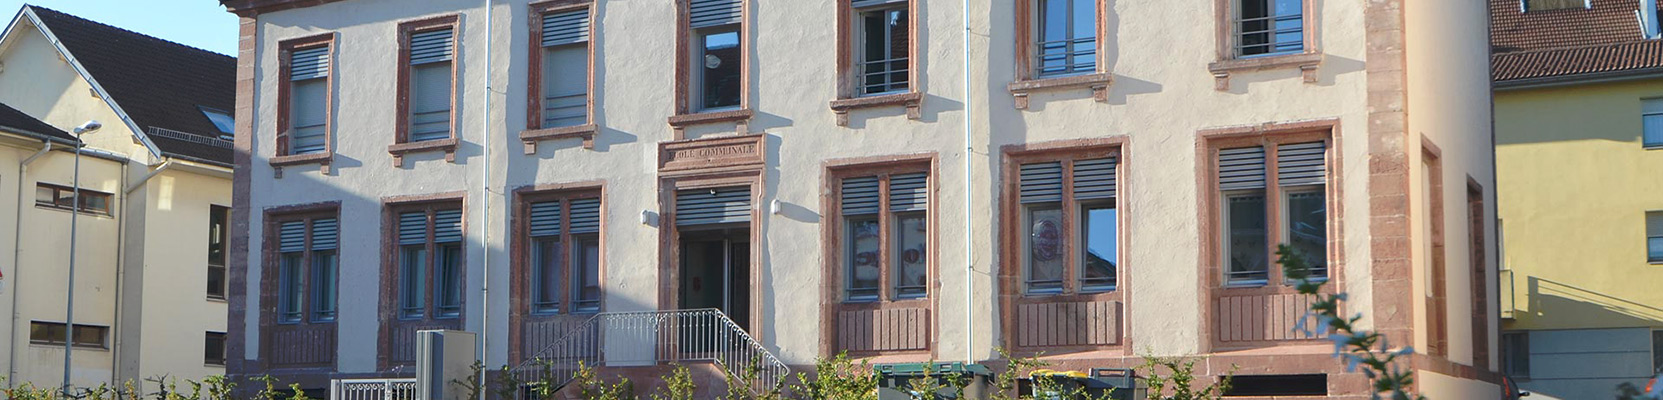 Ancienne école 1880 rénovée – Saint-Dié-des-Vosges - 6 logements